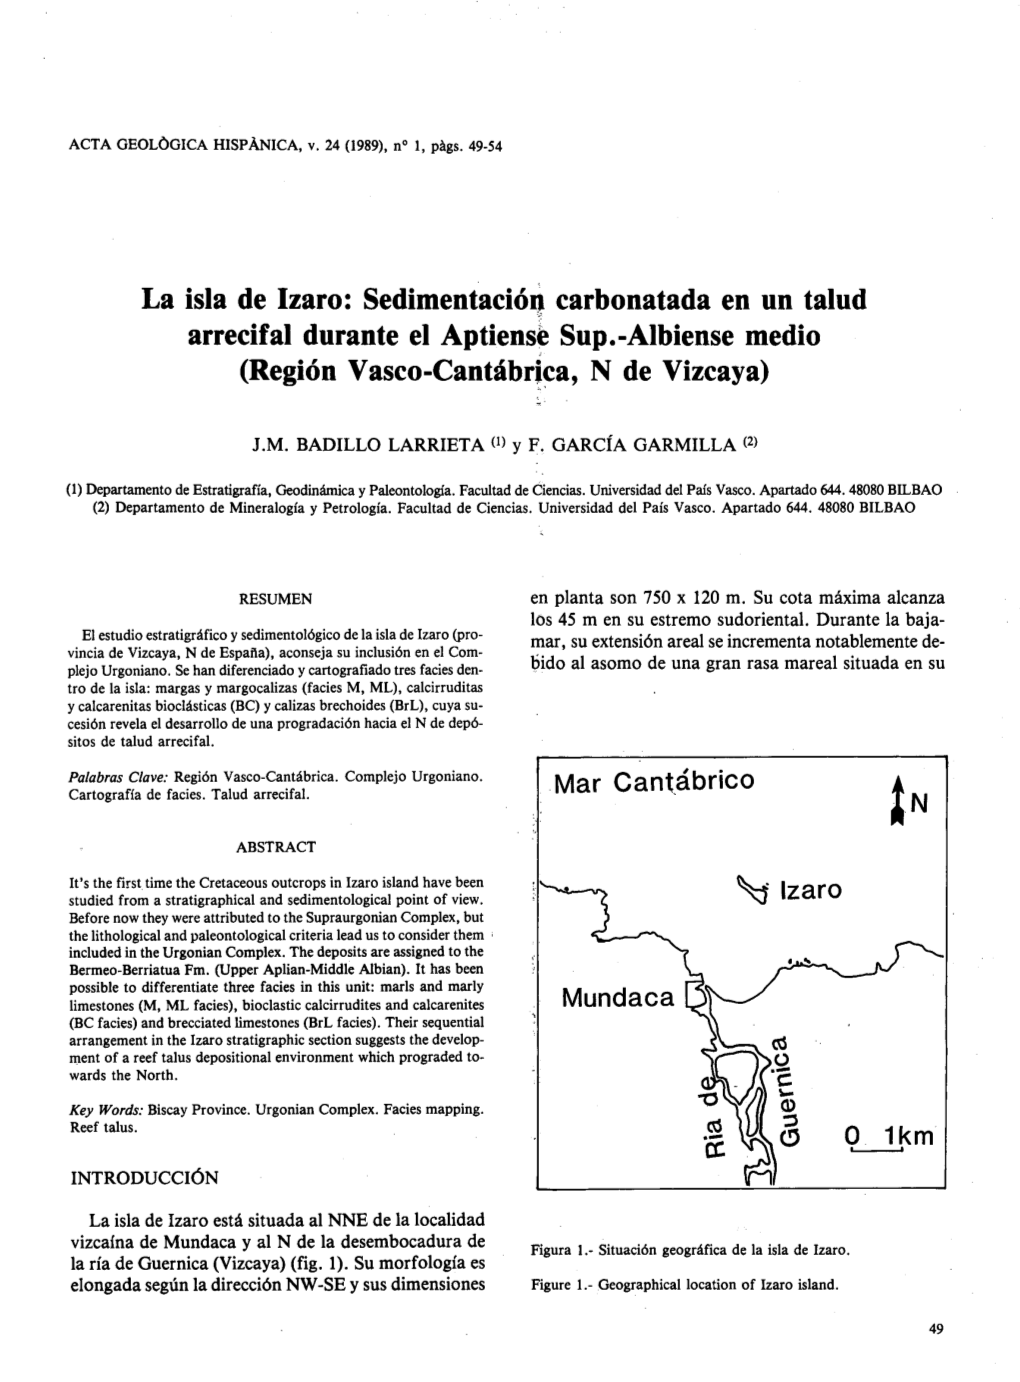 Sedimentación Carbonatada En Un Talud Arrecif Al Durante El Aptiense Sup .-Albiense Medio (Región Vasco-Canthbrica, N De Vizcaya)